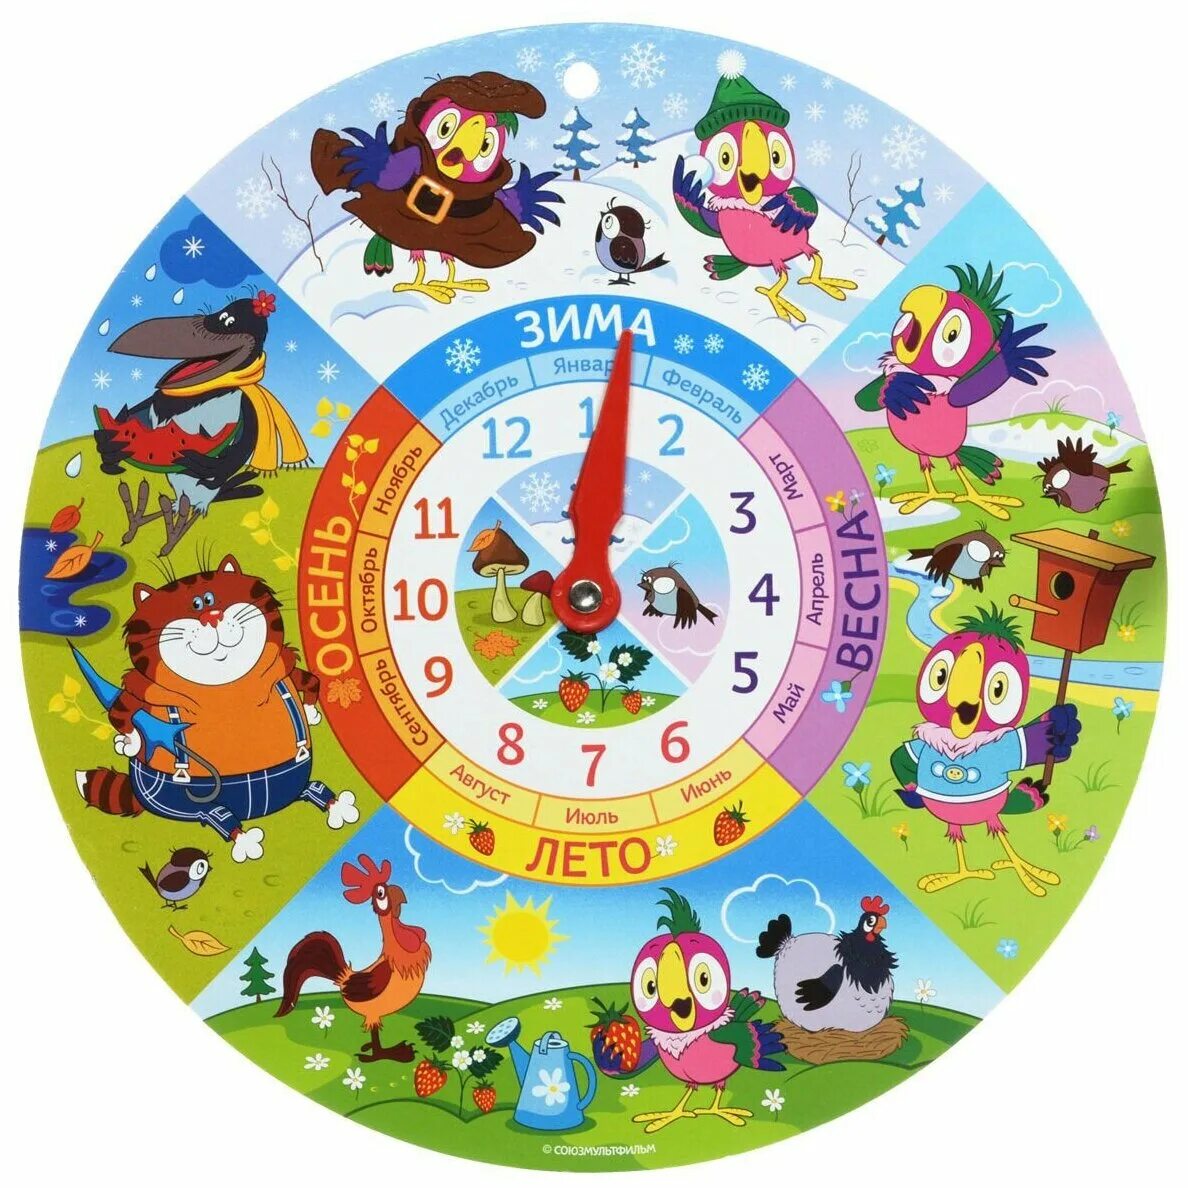 Игра часы. Часы детские обучающие. Часы для детского сада обучающие. Часы детские детский сад. Часы для дошкольников.